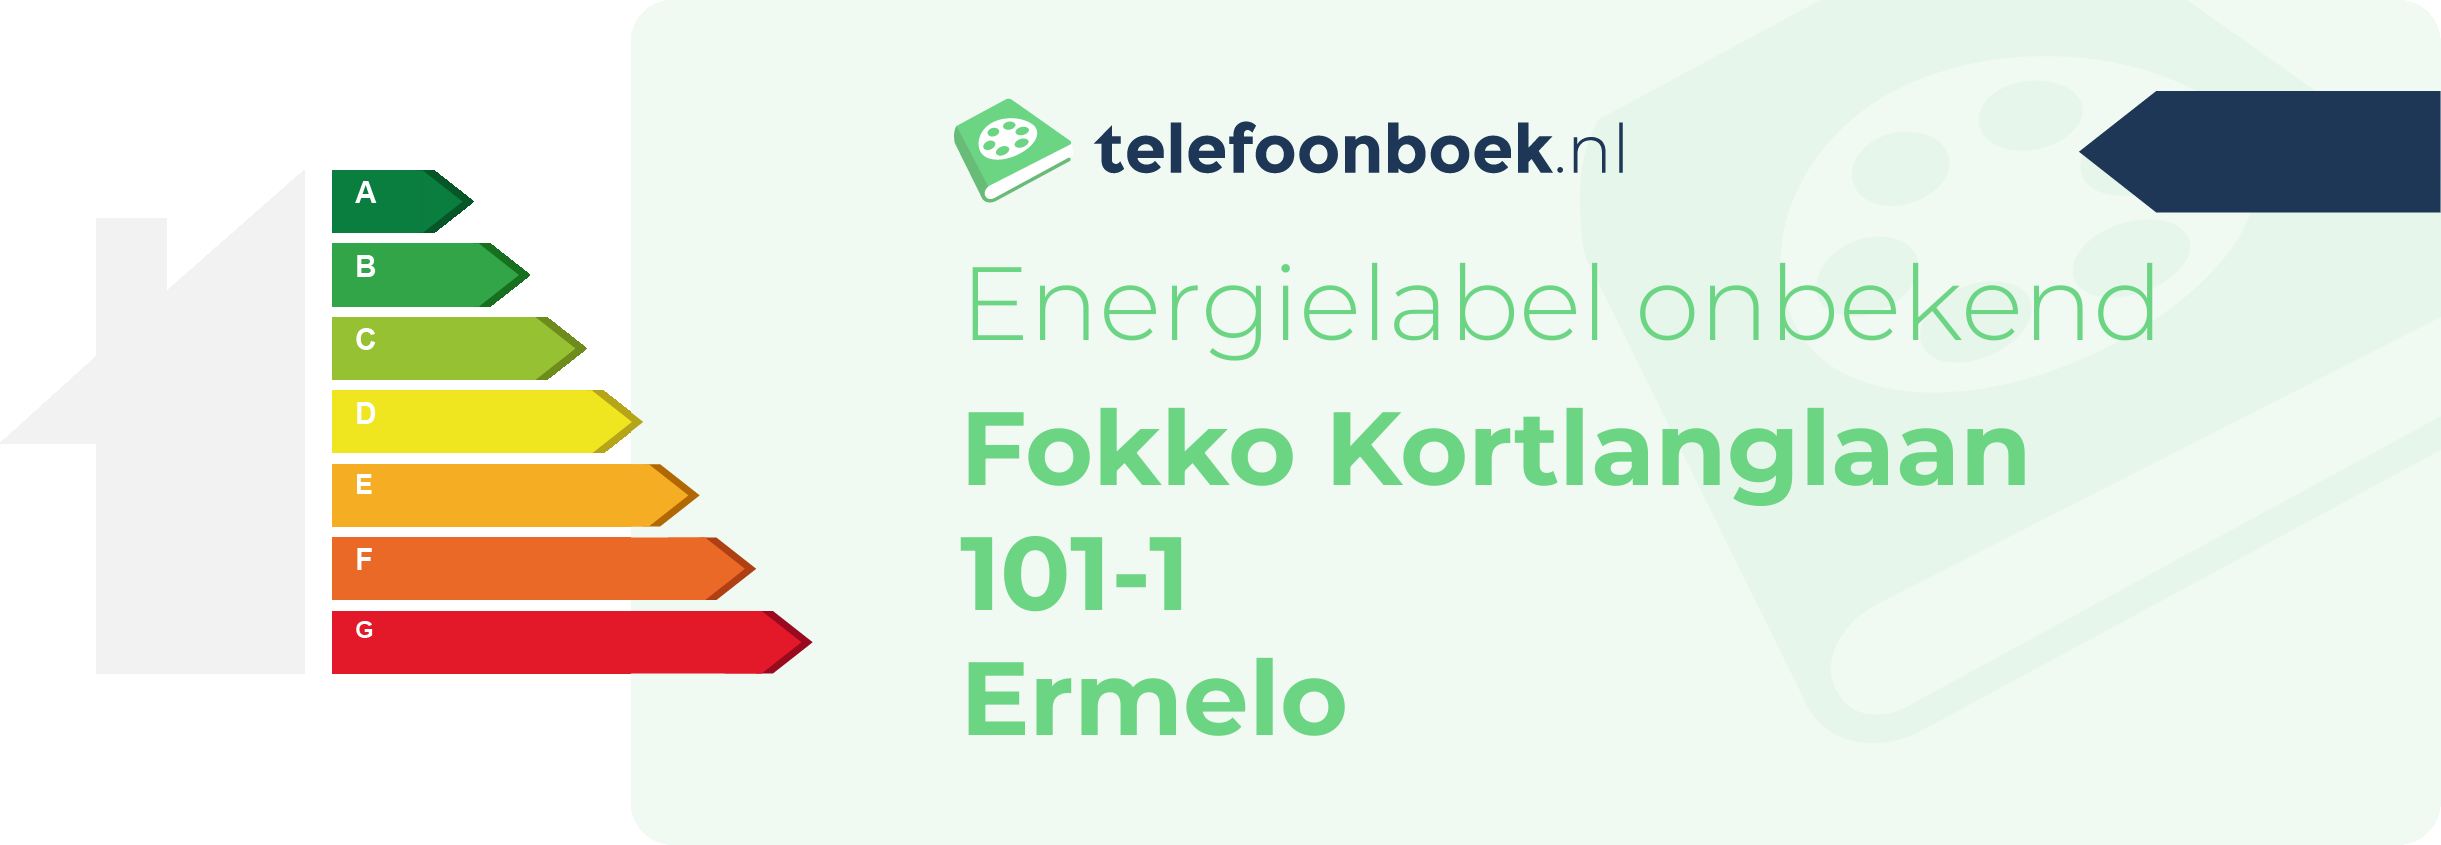 Energielabel Fokko Kortlanglaan 101-1 Ermelo